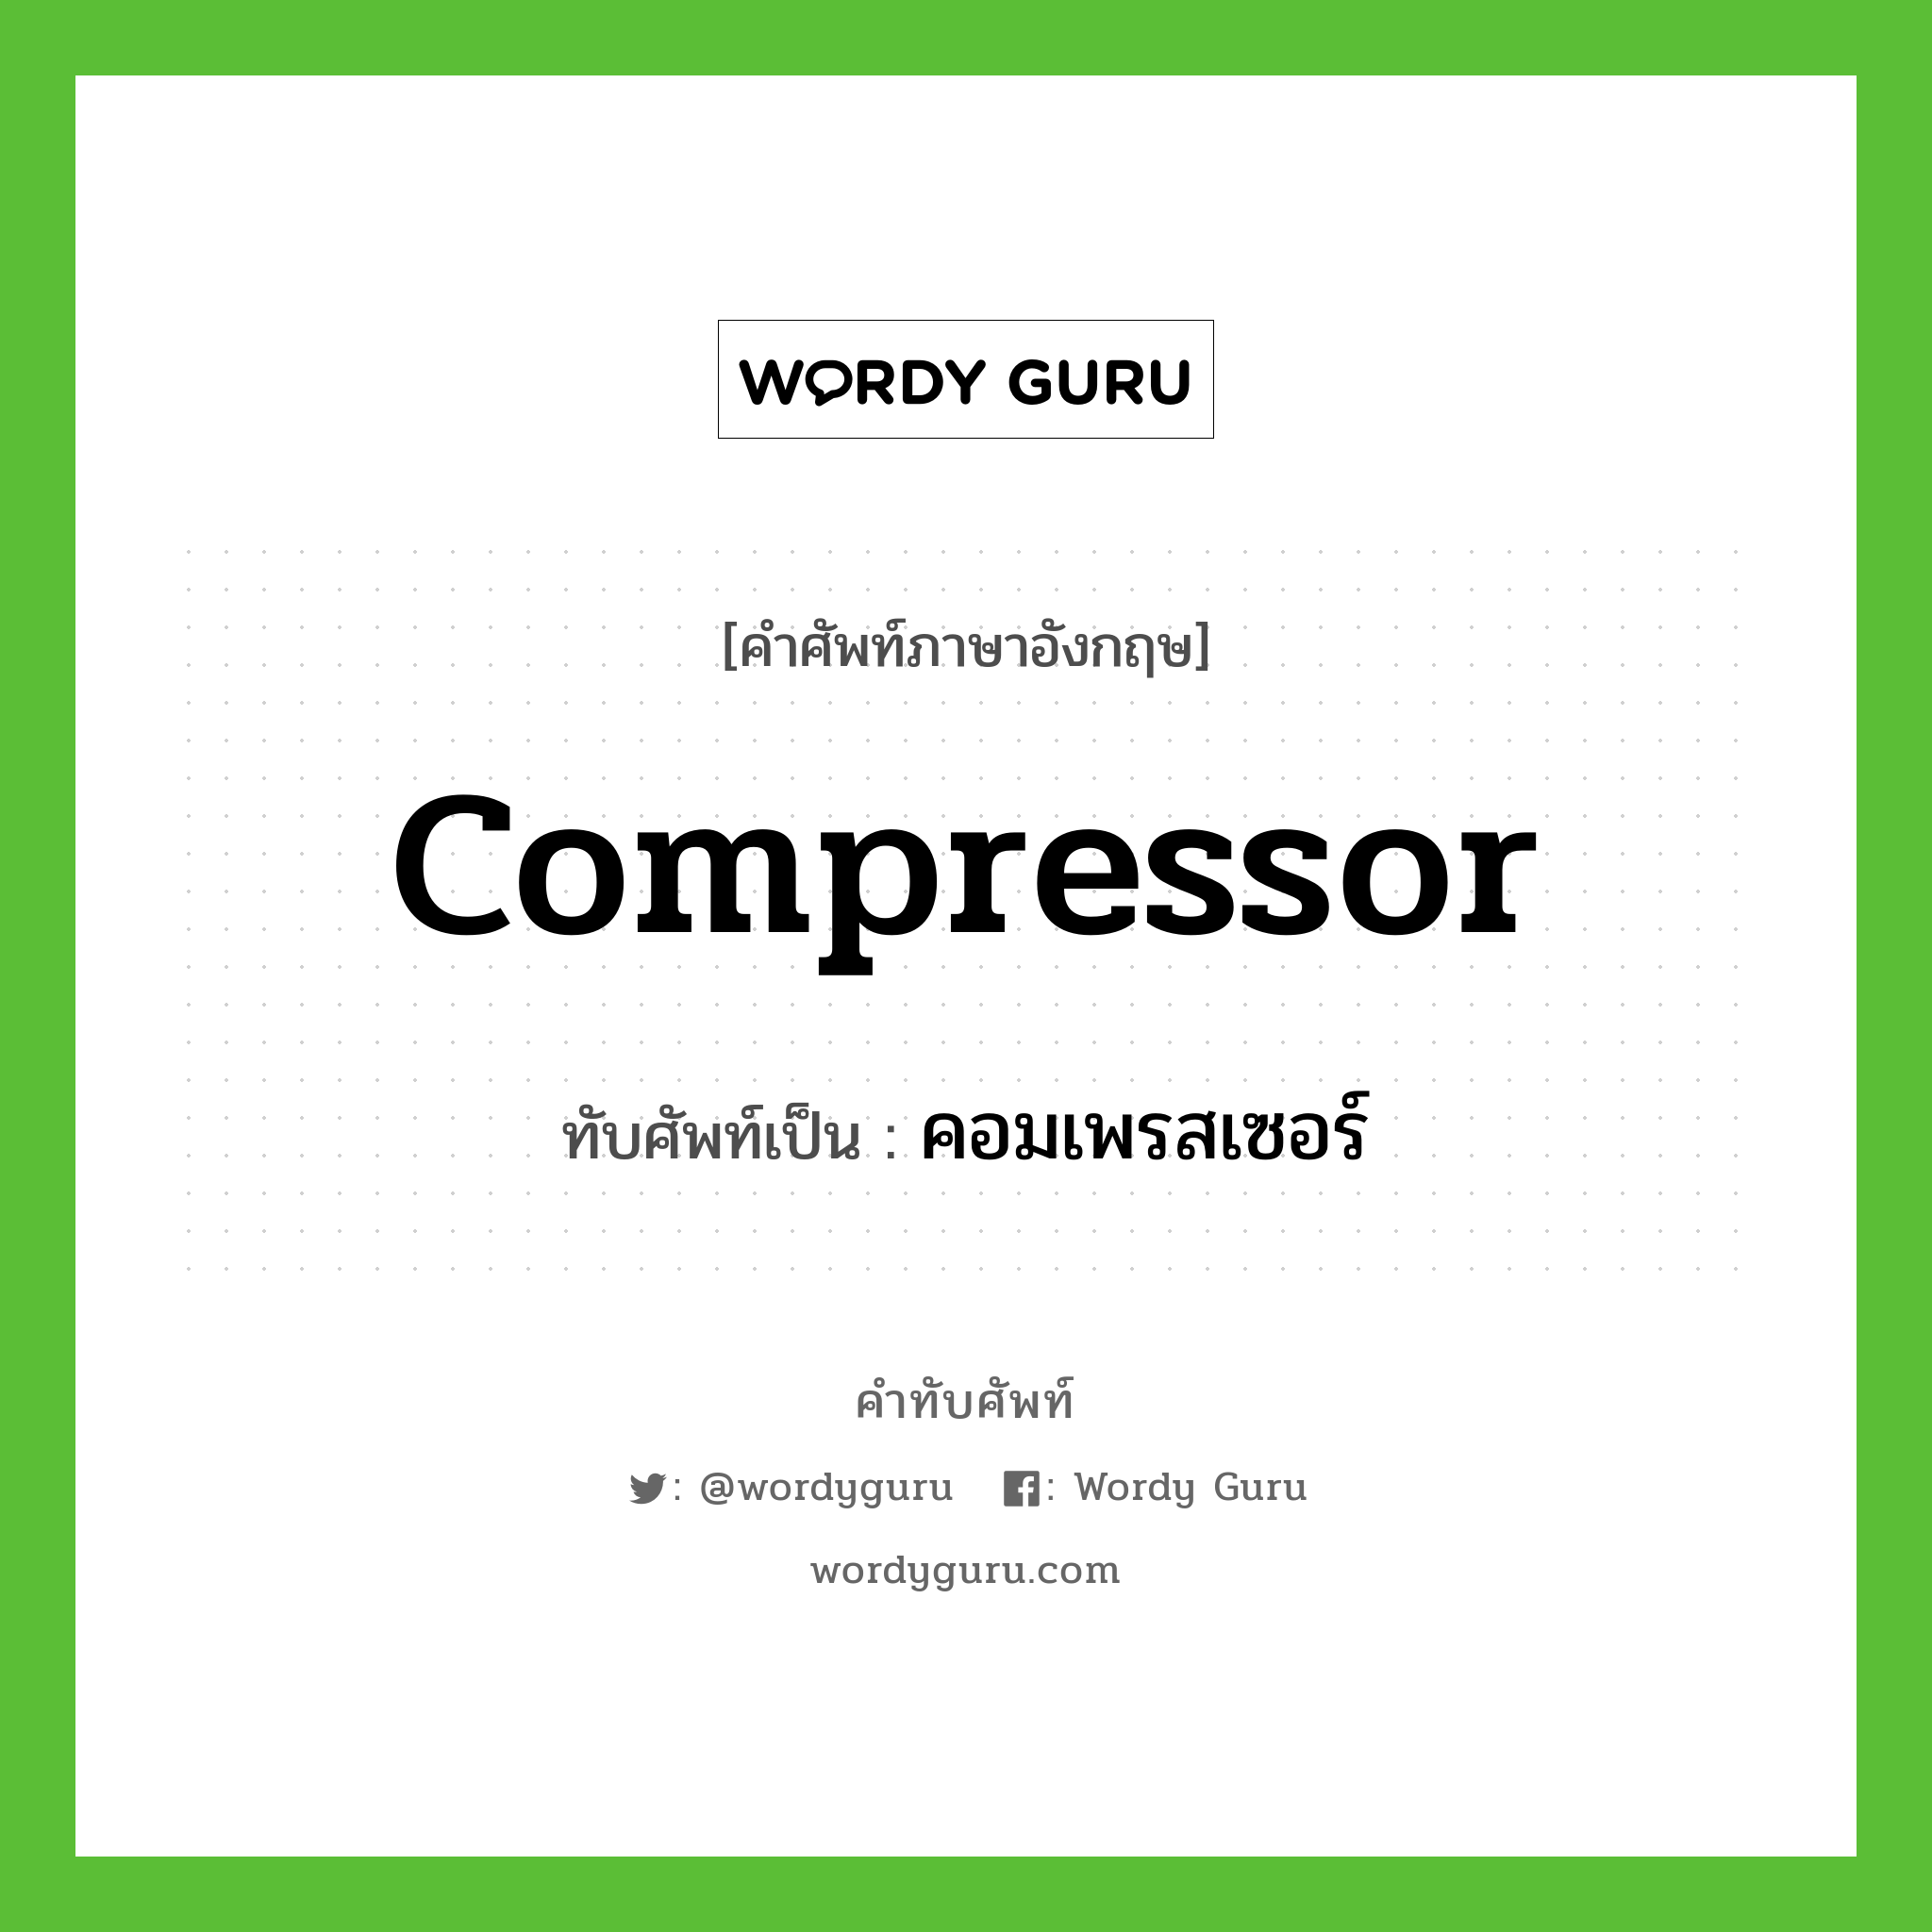 compressor เขียนเป็นคำไทยว่าอะไร?, คำศัพท์ภาษาอังกฤษ compressor ทับศัพท์เป็น คอมเพรสเซอร์